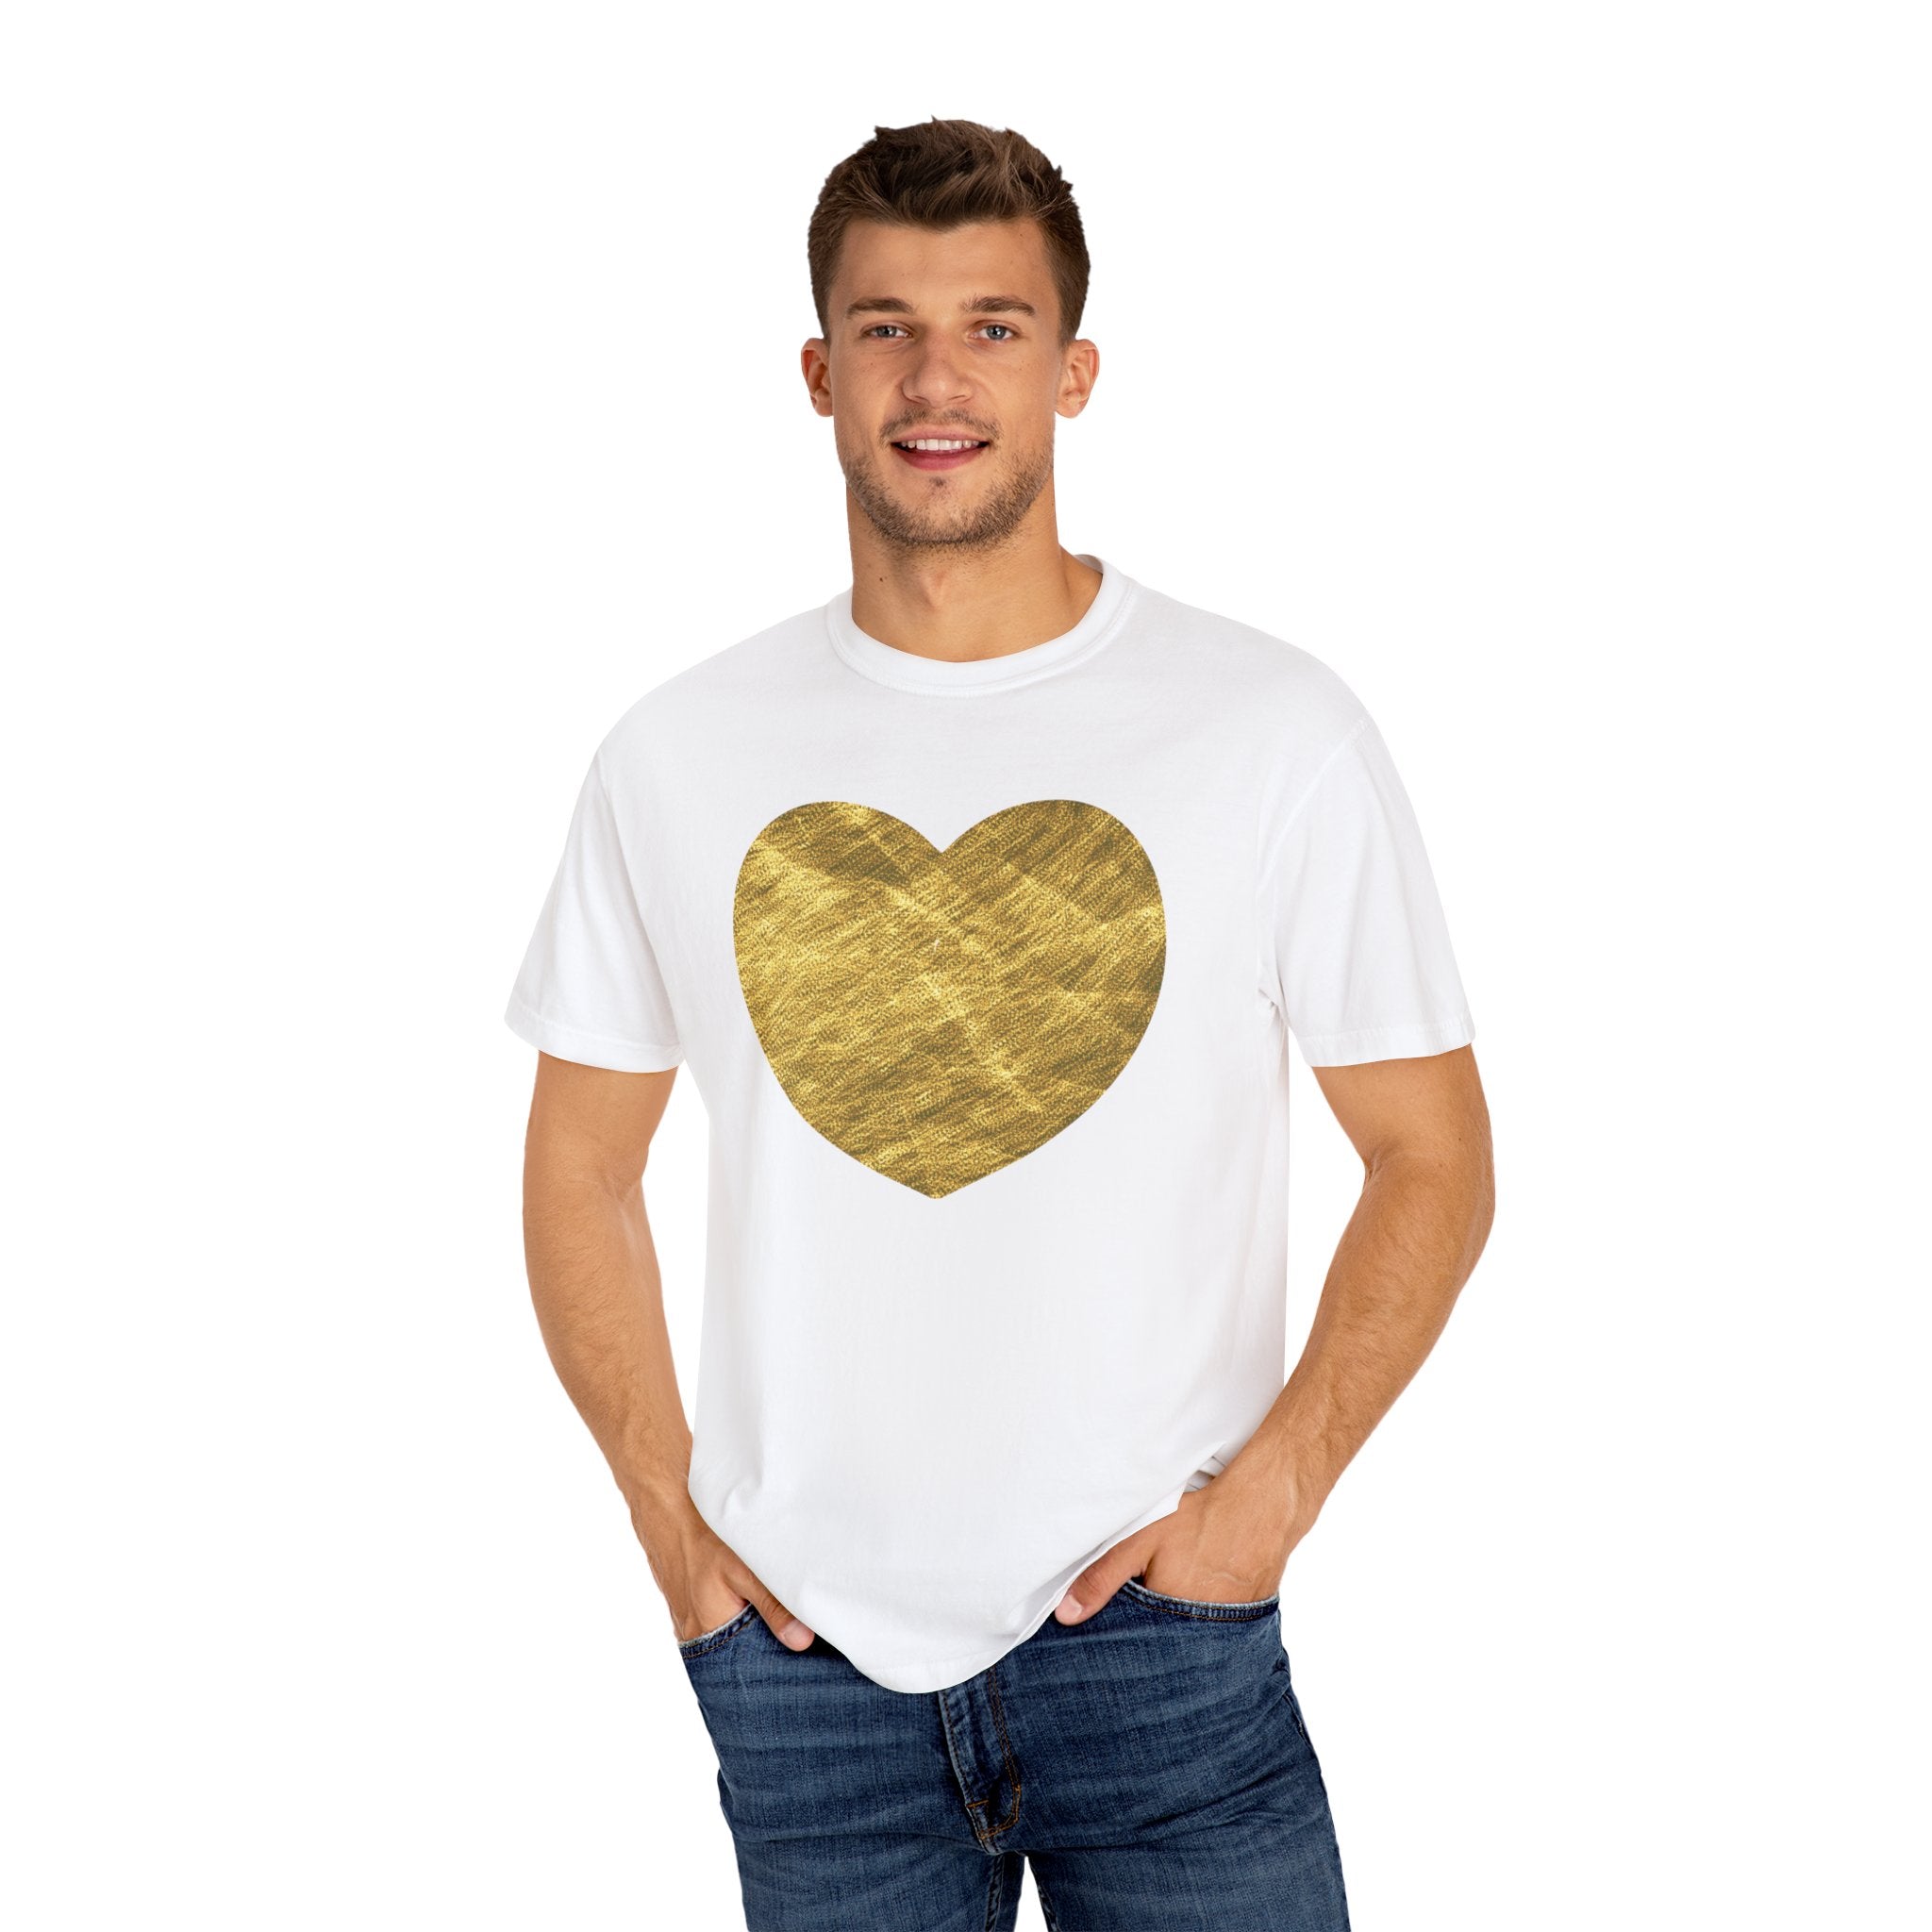 HEART OF GOLD Unisex Garment-Dyed T-shirt